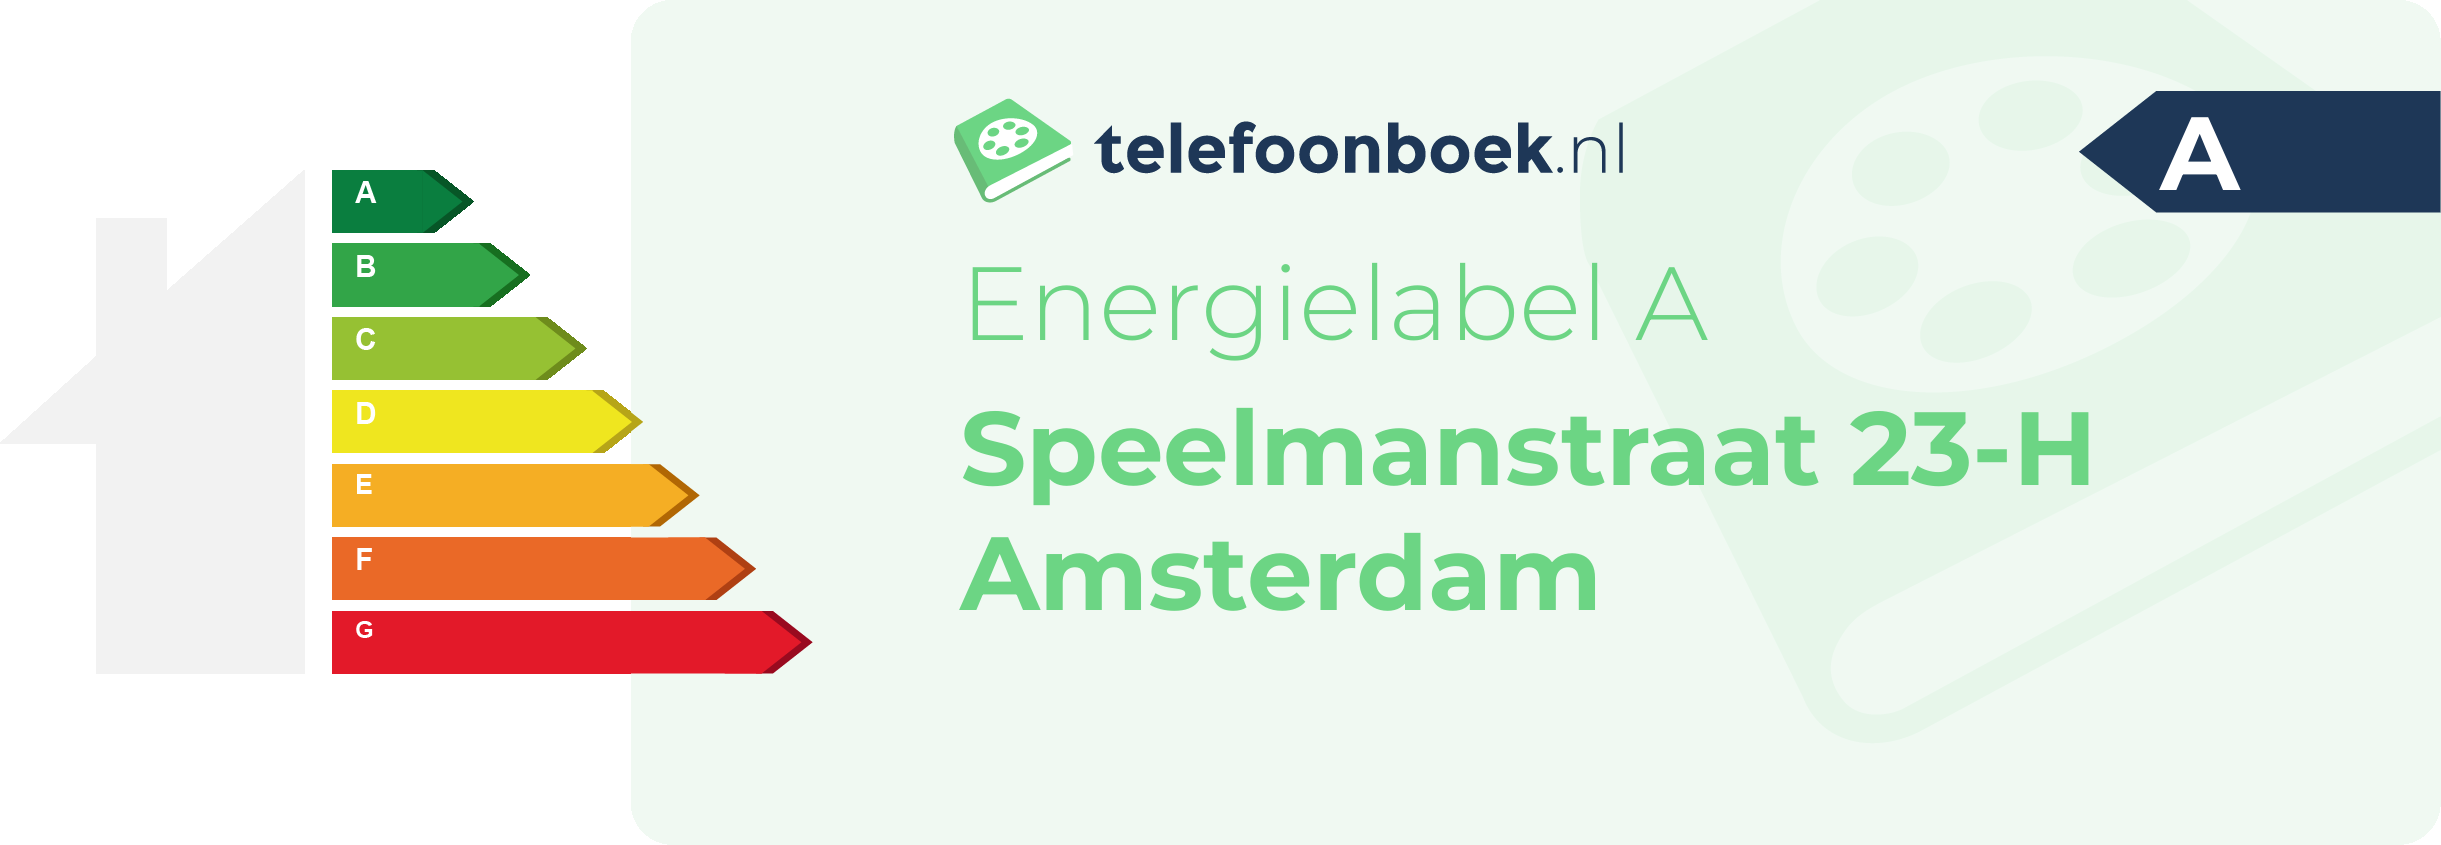 Energielabel Speelmanstraat 23-H Amsterdam